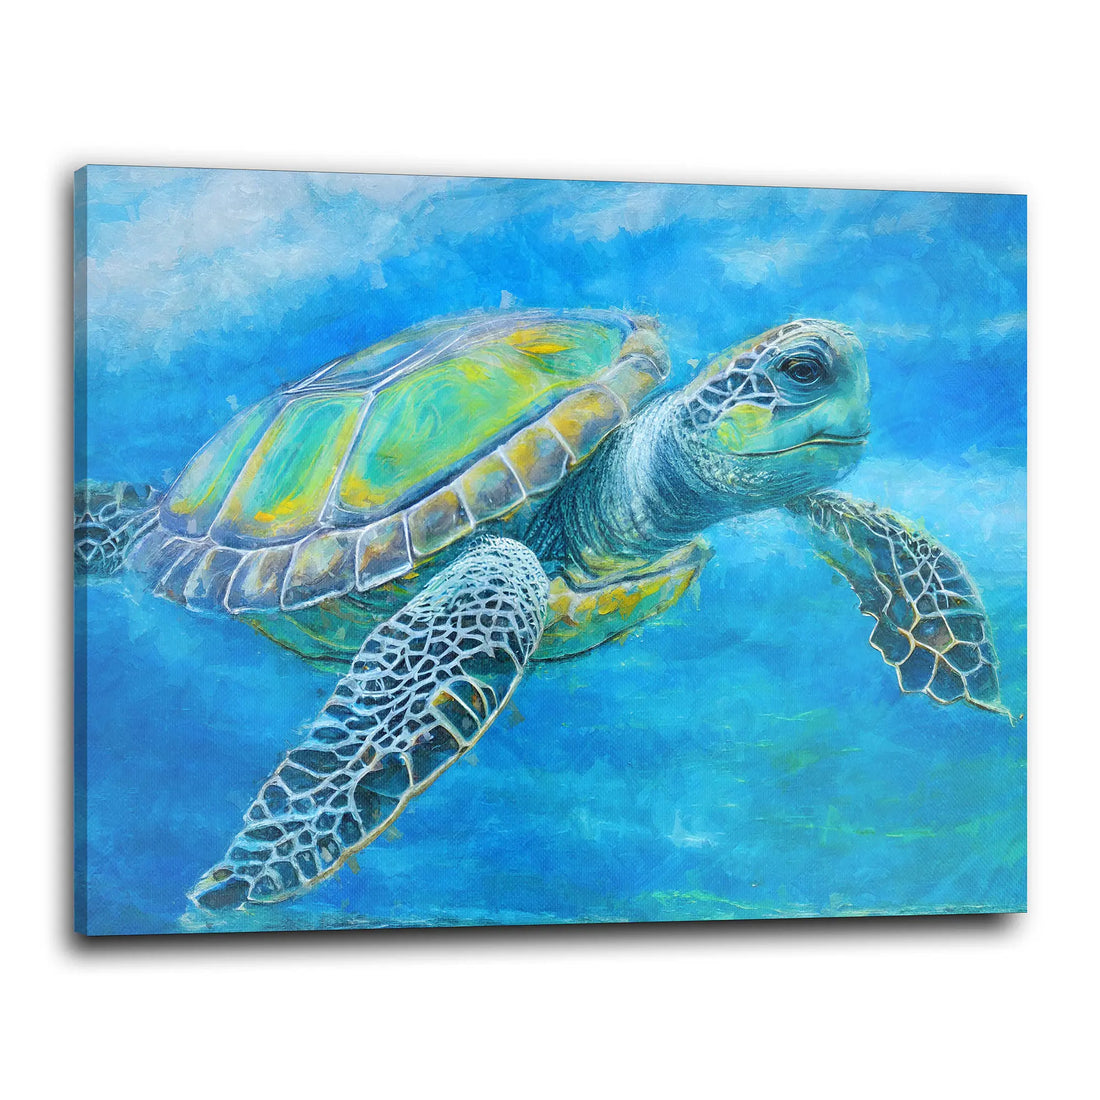 Wandbild Meeresschildkröte groß